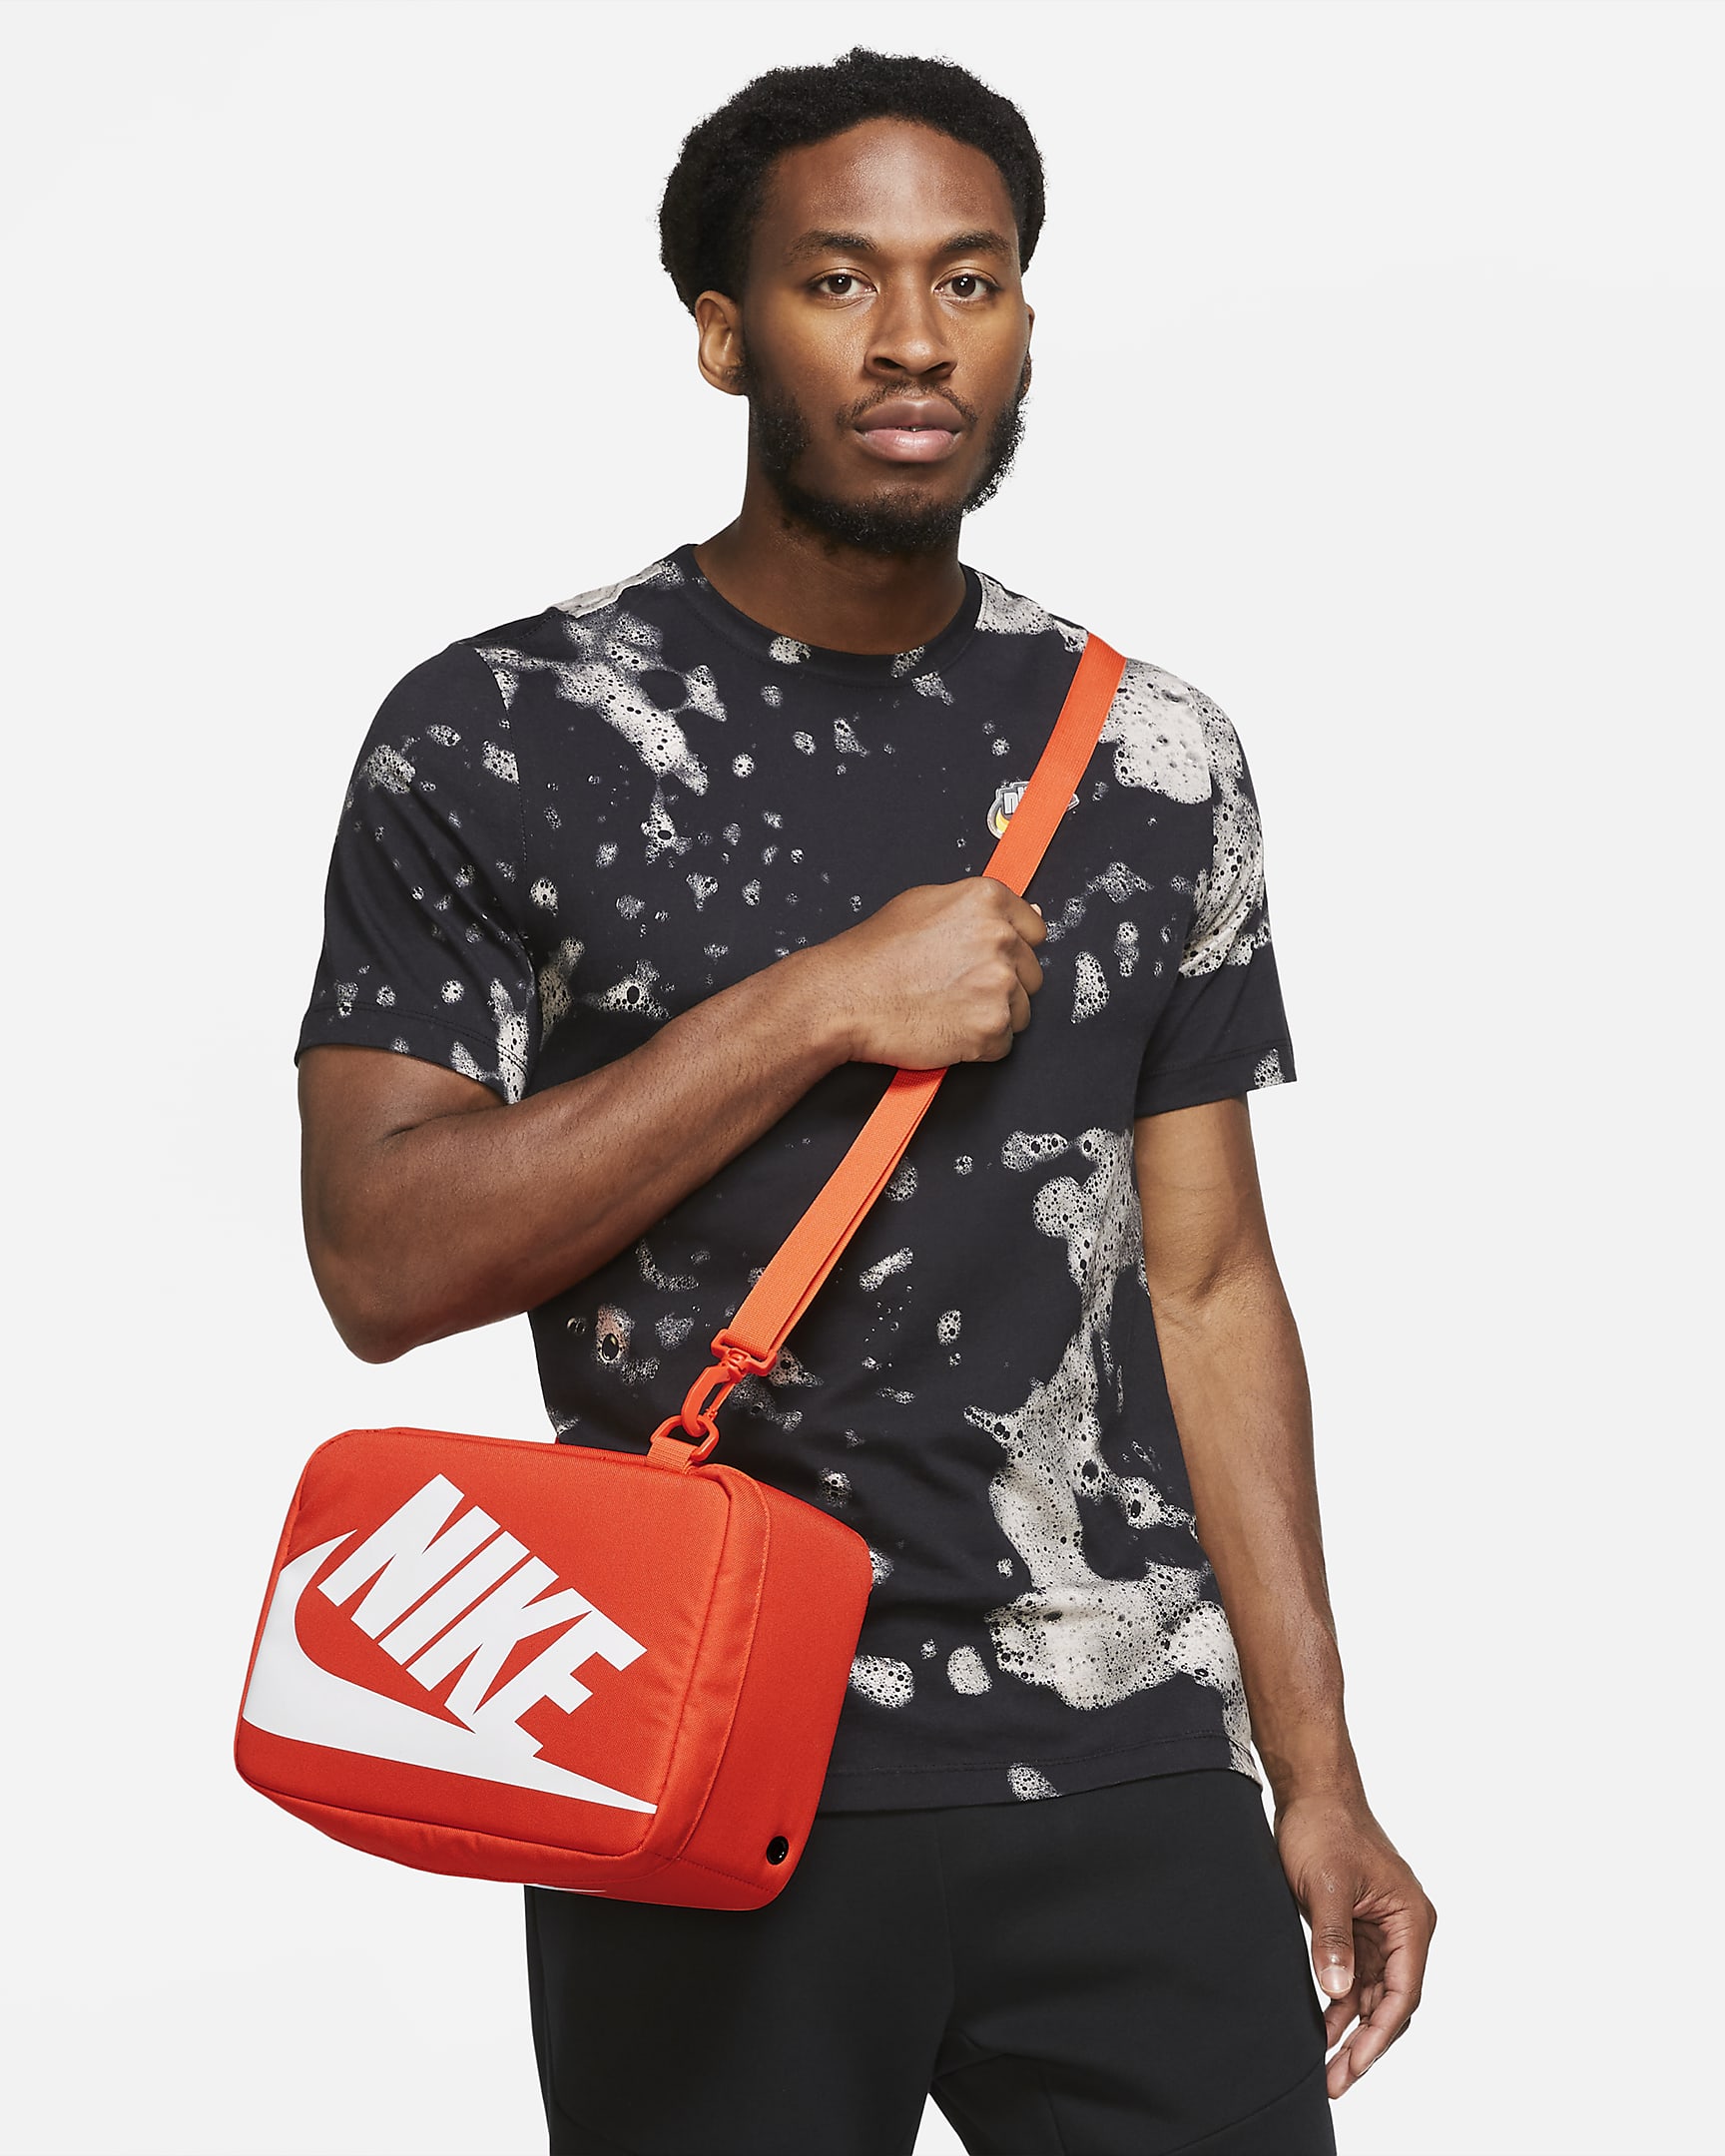 Nike Shoe Box Bag (Small, 8L). Nike UK